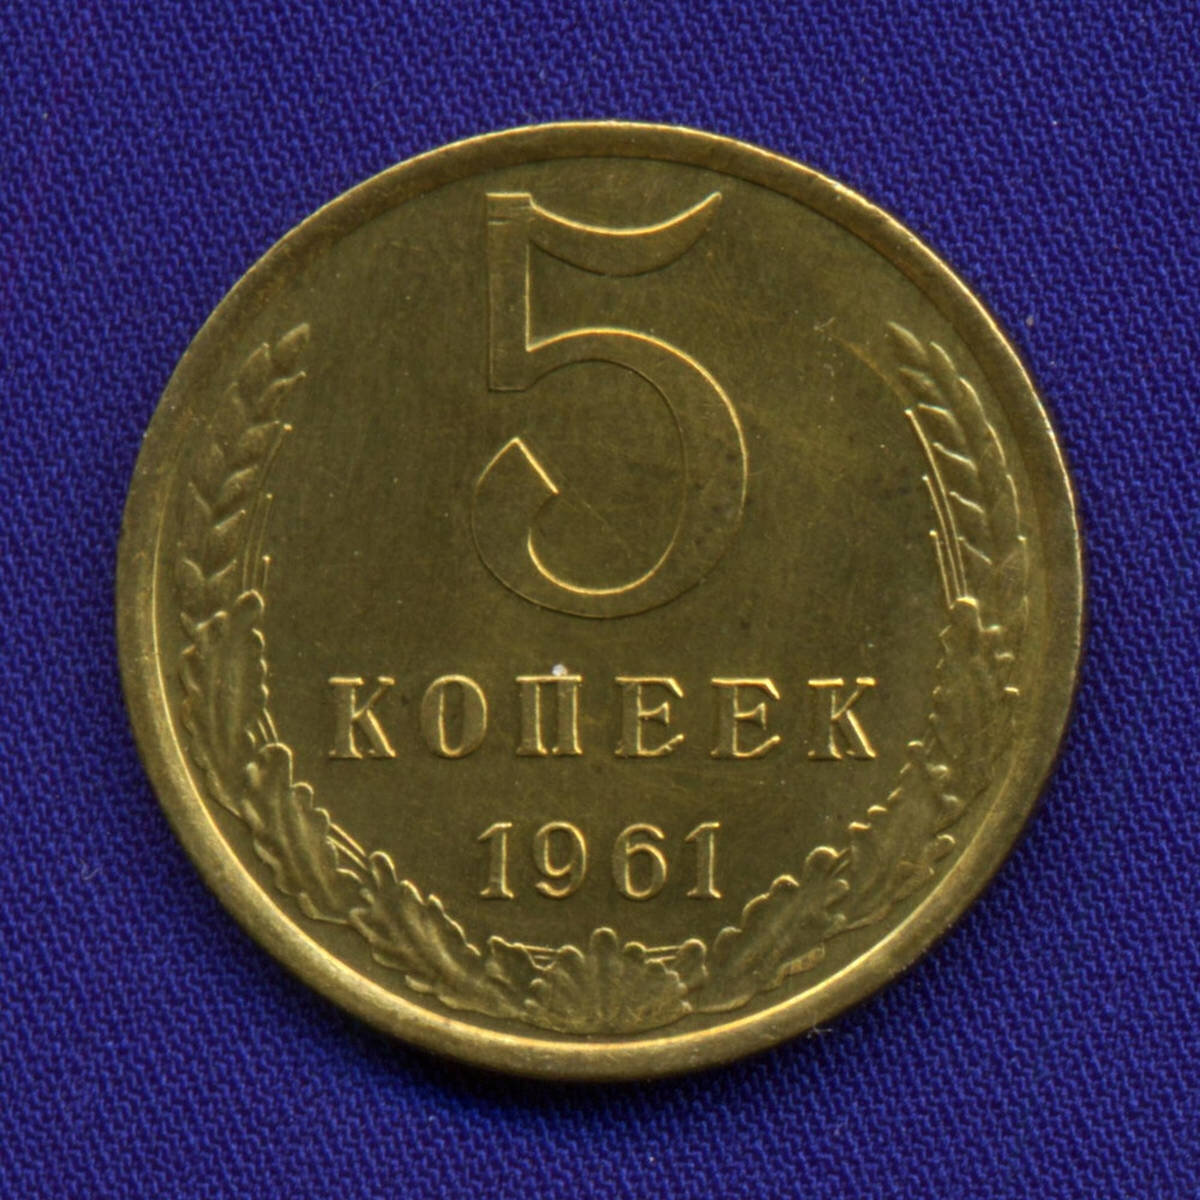 Почти все мои знакомы коллекционеры и нумизматы начинали коллекционировать монеты именно с советского периода.